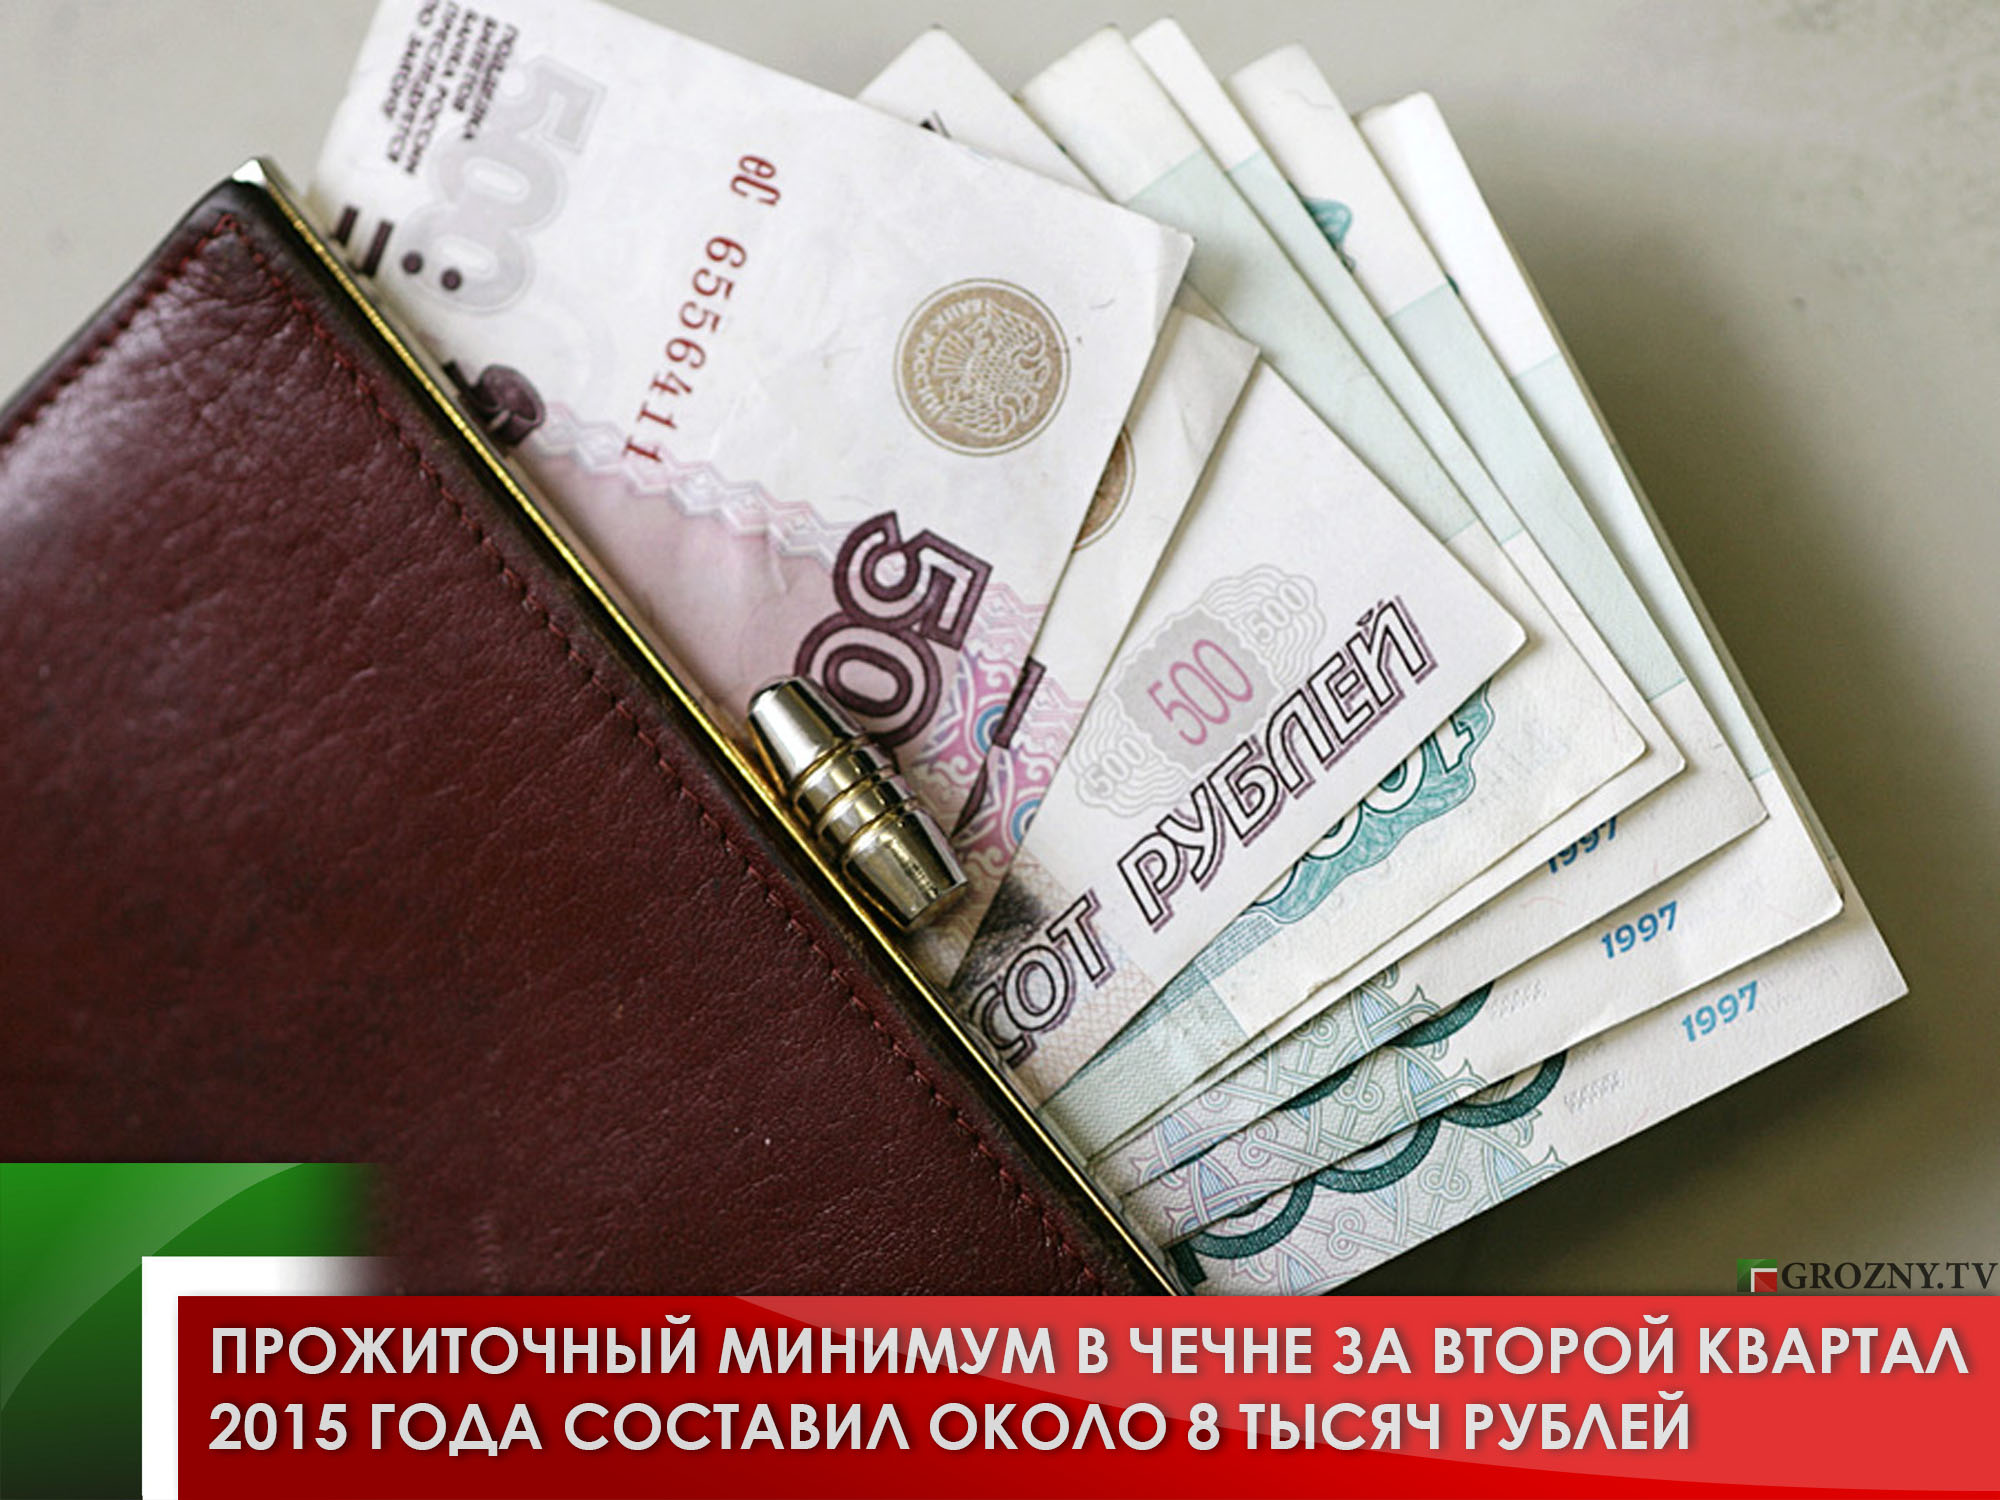 Прожиточный минимум в Чечне за второй квартал 2015 года составил около 8 тысяч рублей